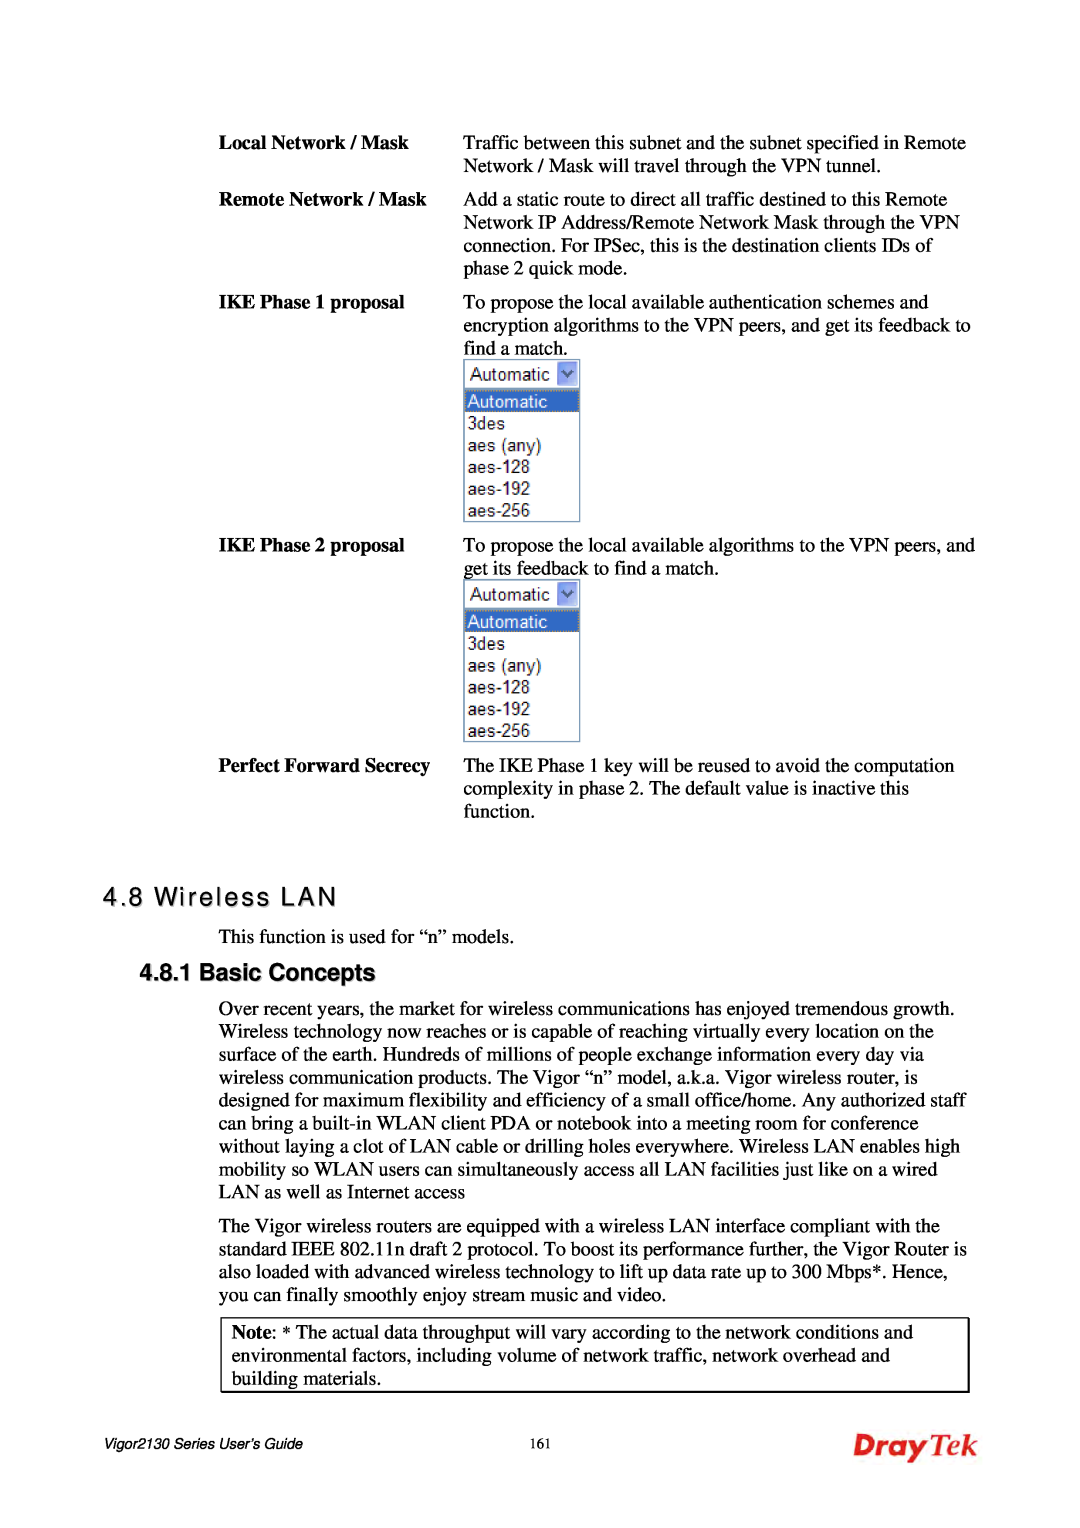 Draytek 2130 manual Wireless LAN, Basic Concepts 